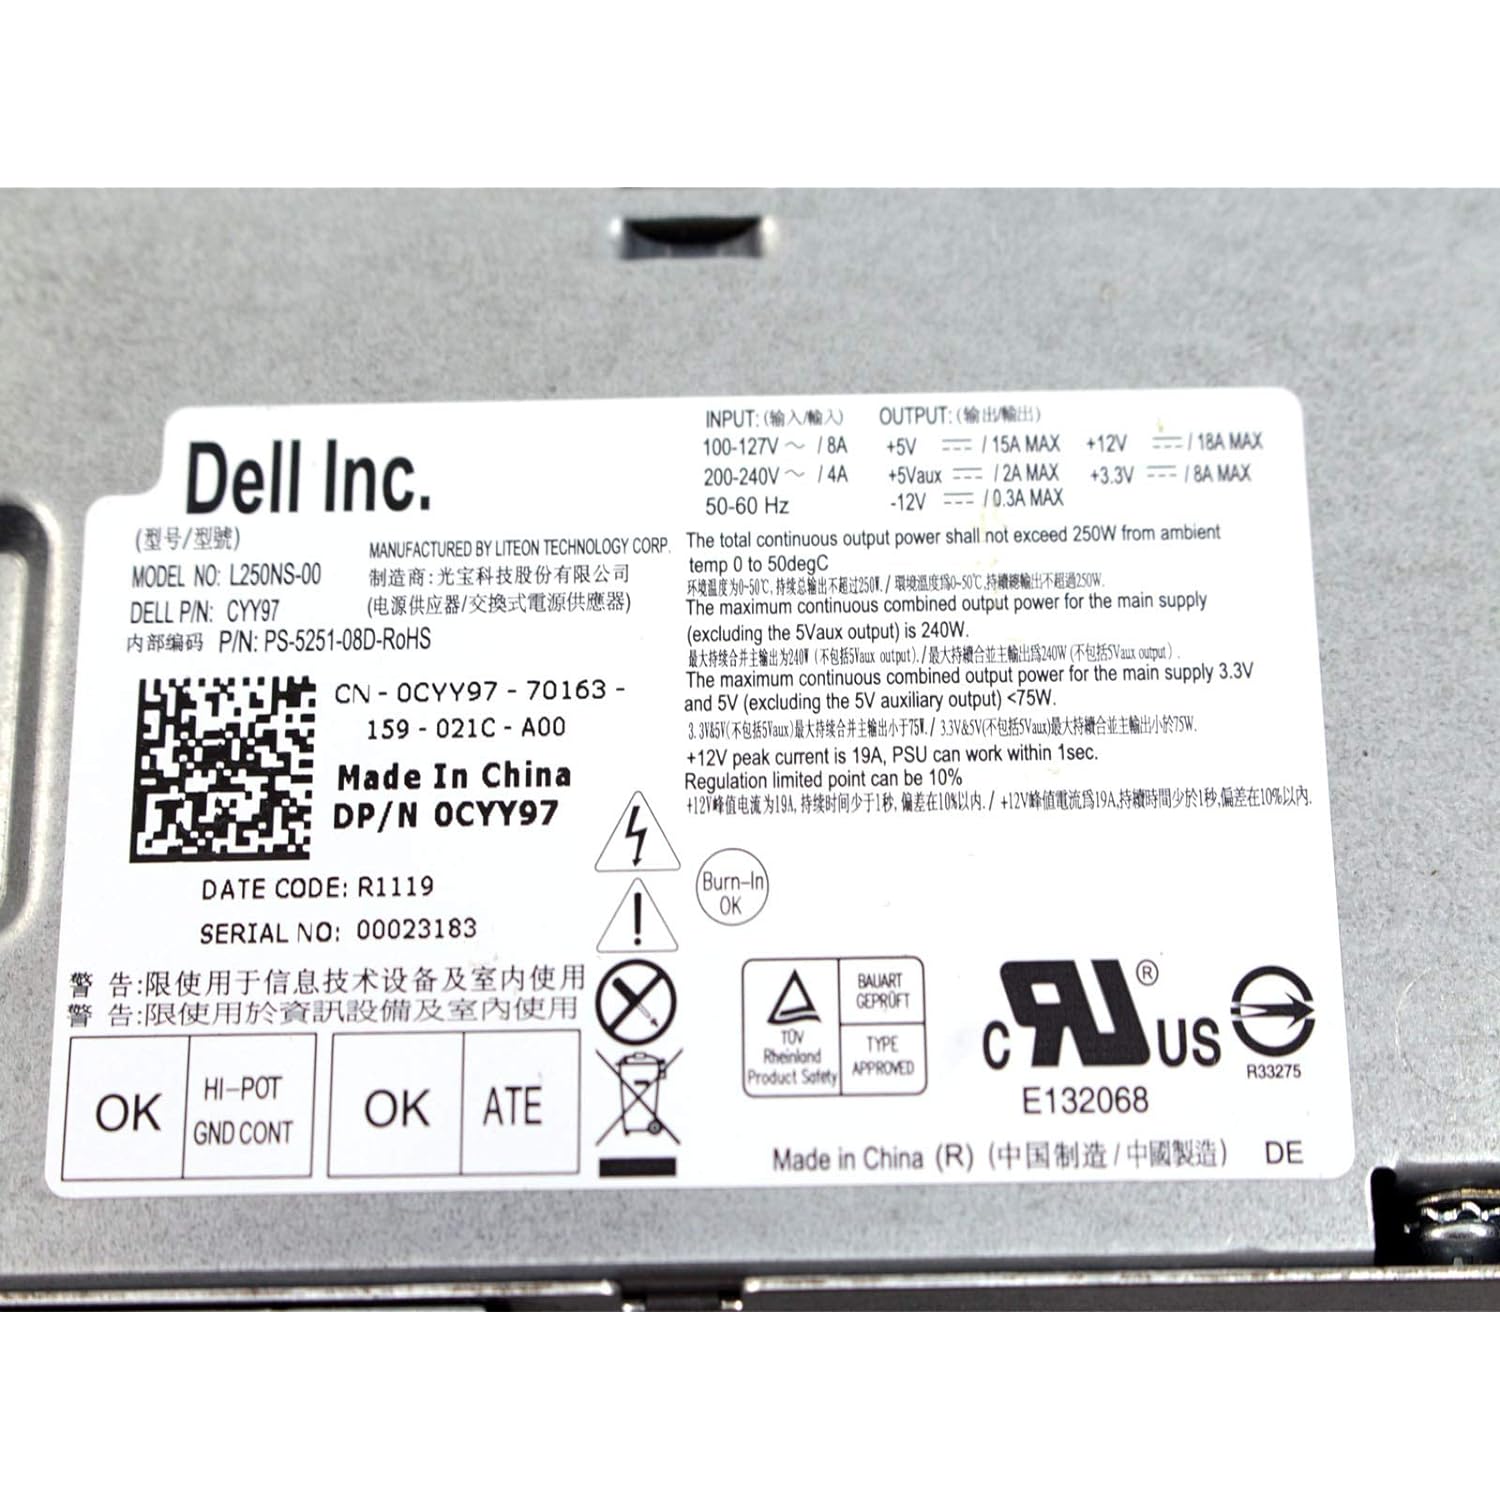 Dell Genuine Dell 250W Watt CYY97 7GC81 L250NS-00 Power Supply Unit PSU For Inspiron 530s 620s Vostro 200s 220s, Optiplex 390, 790…